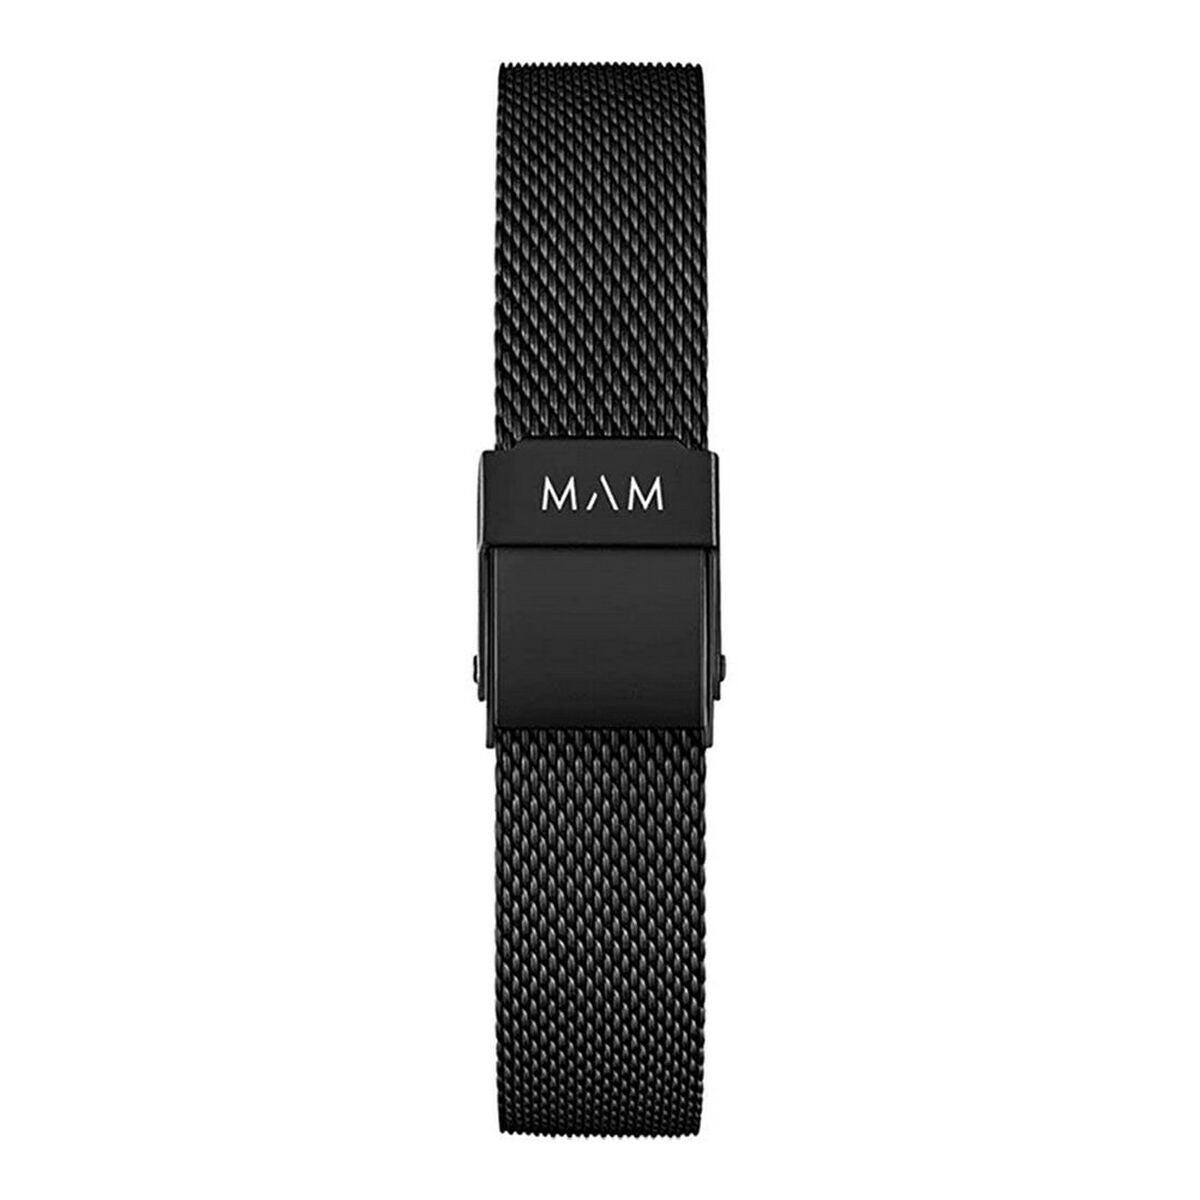 Kaufe Unisex-Uhr MAM 680 (Ø 33 mm) bei AWK Flagship um € 63.00